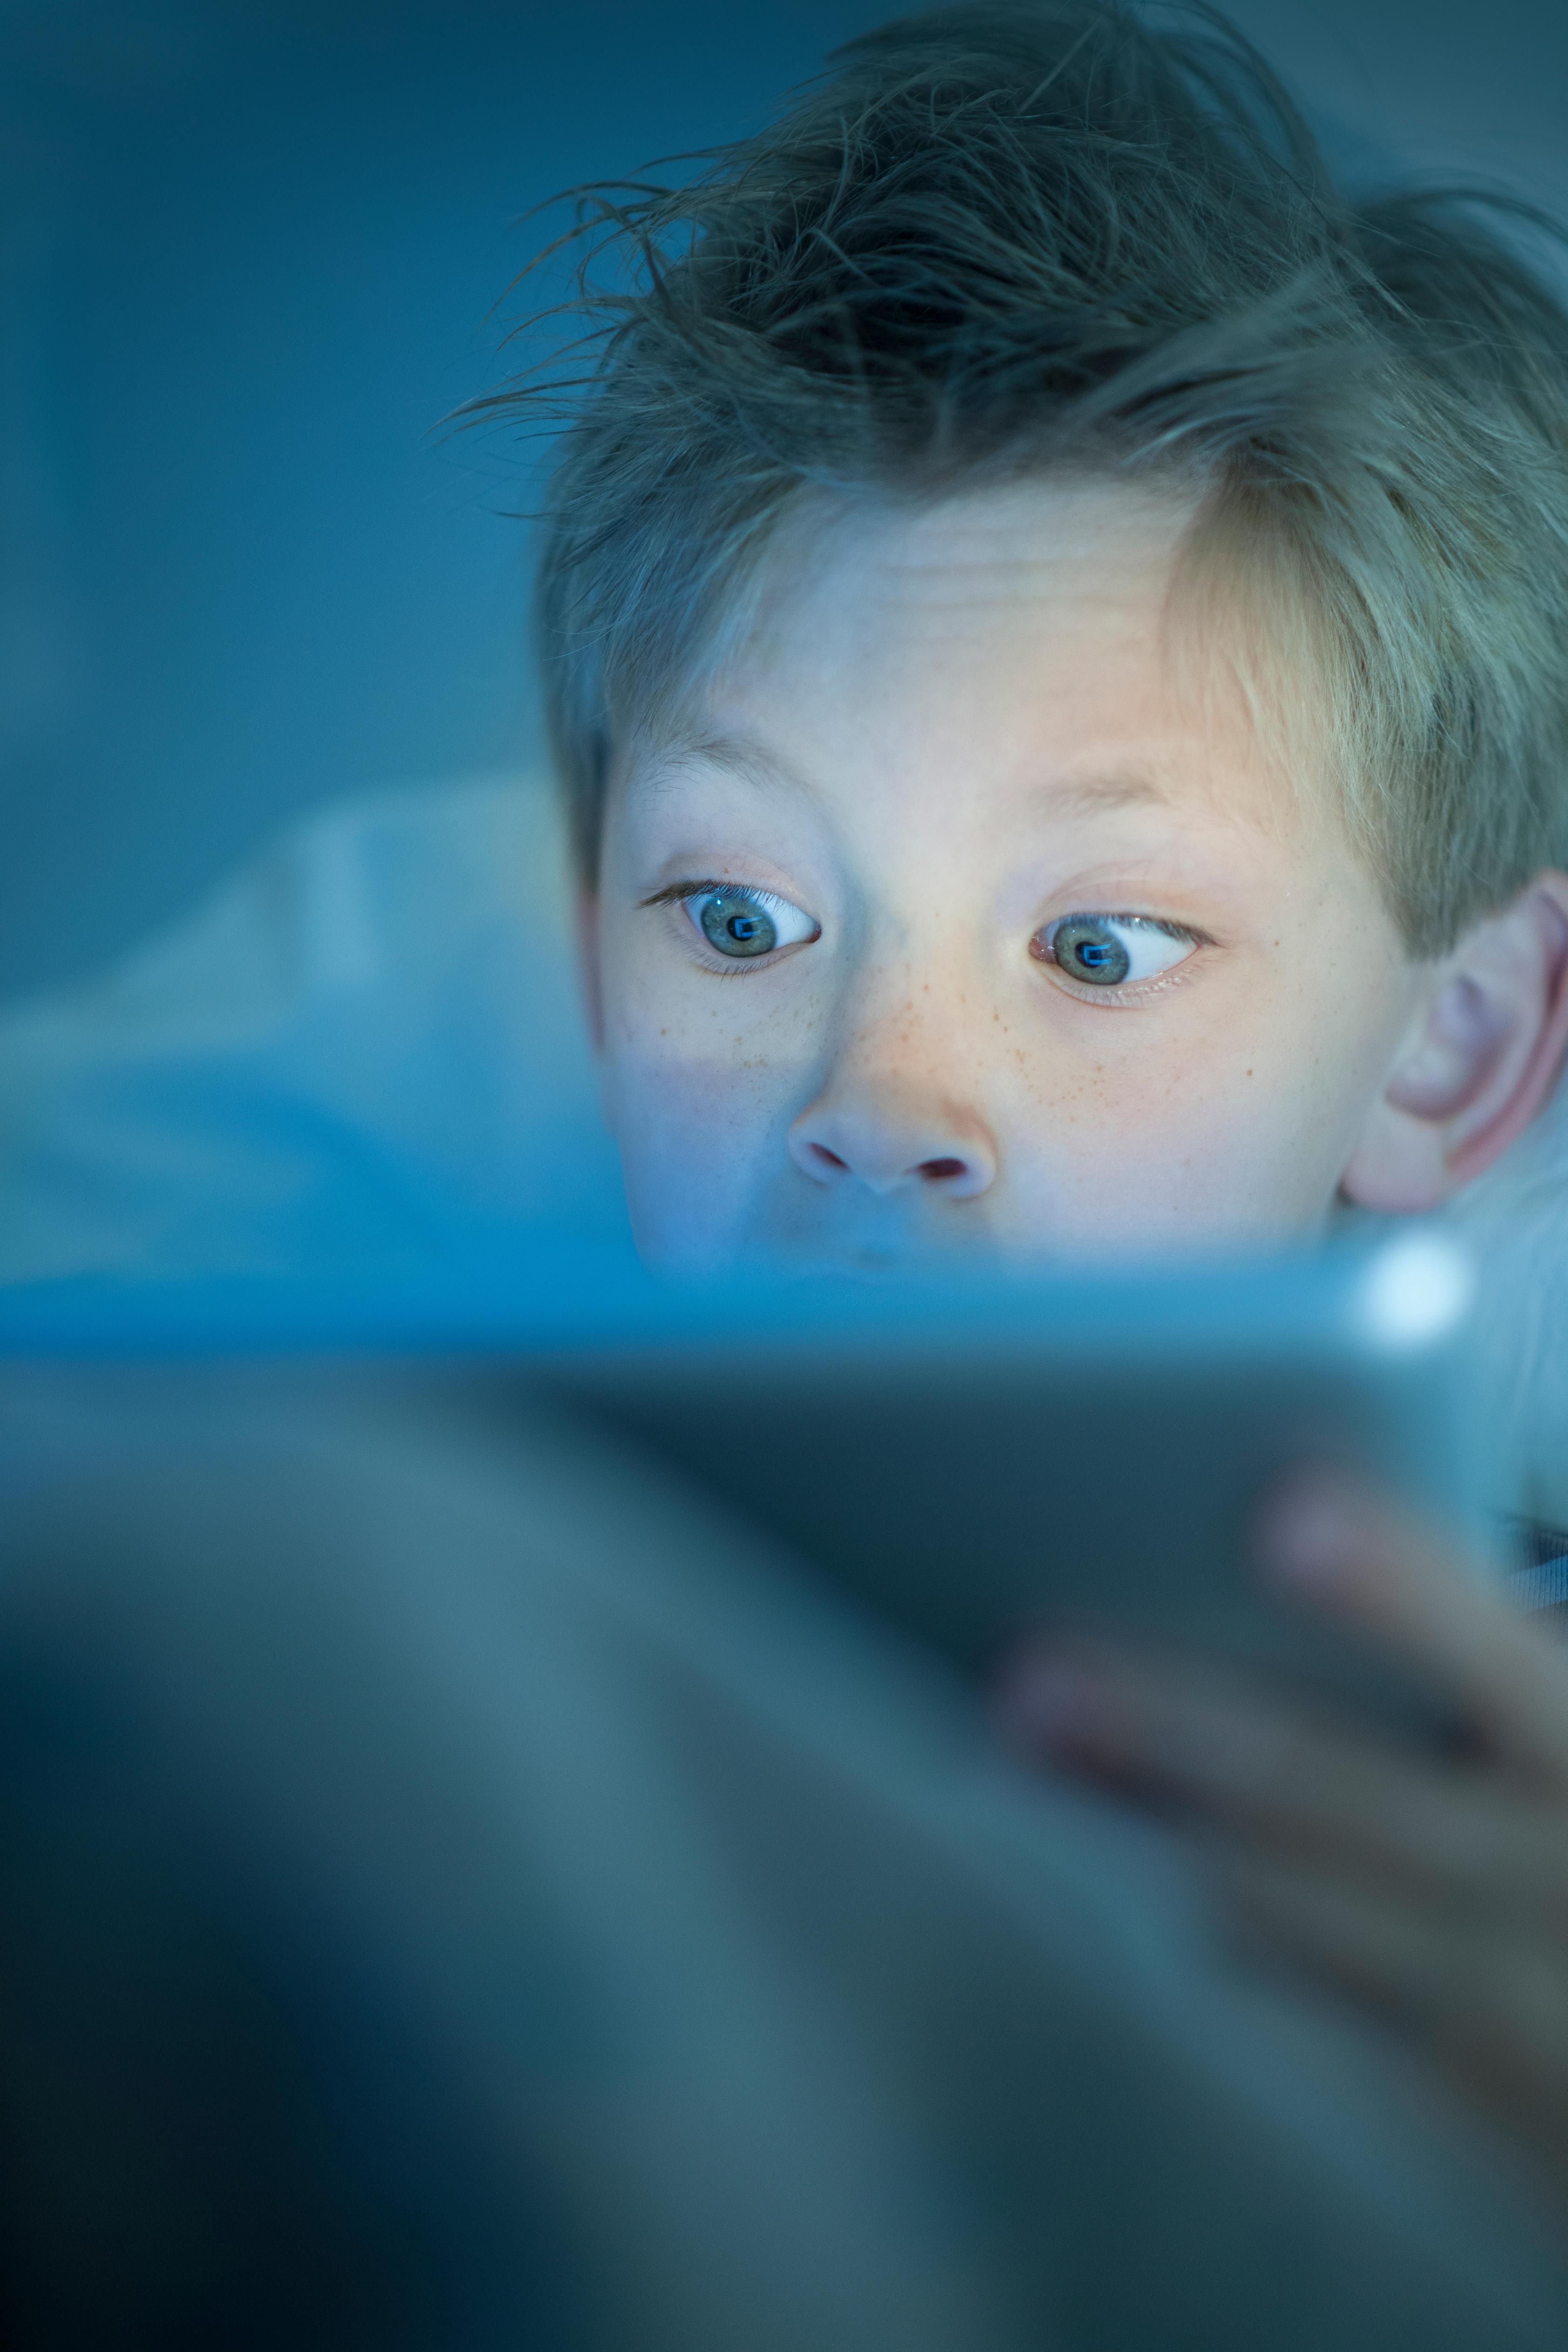  Sudah diterima secara luas bahwa permainan TV dan video dapat menyebabkan anak-anak kurang tidur